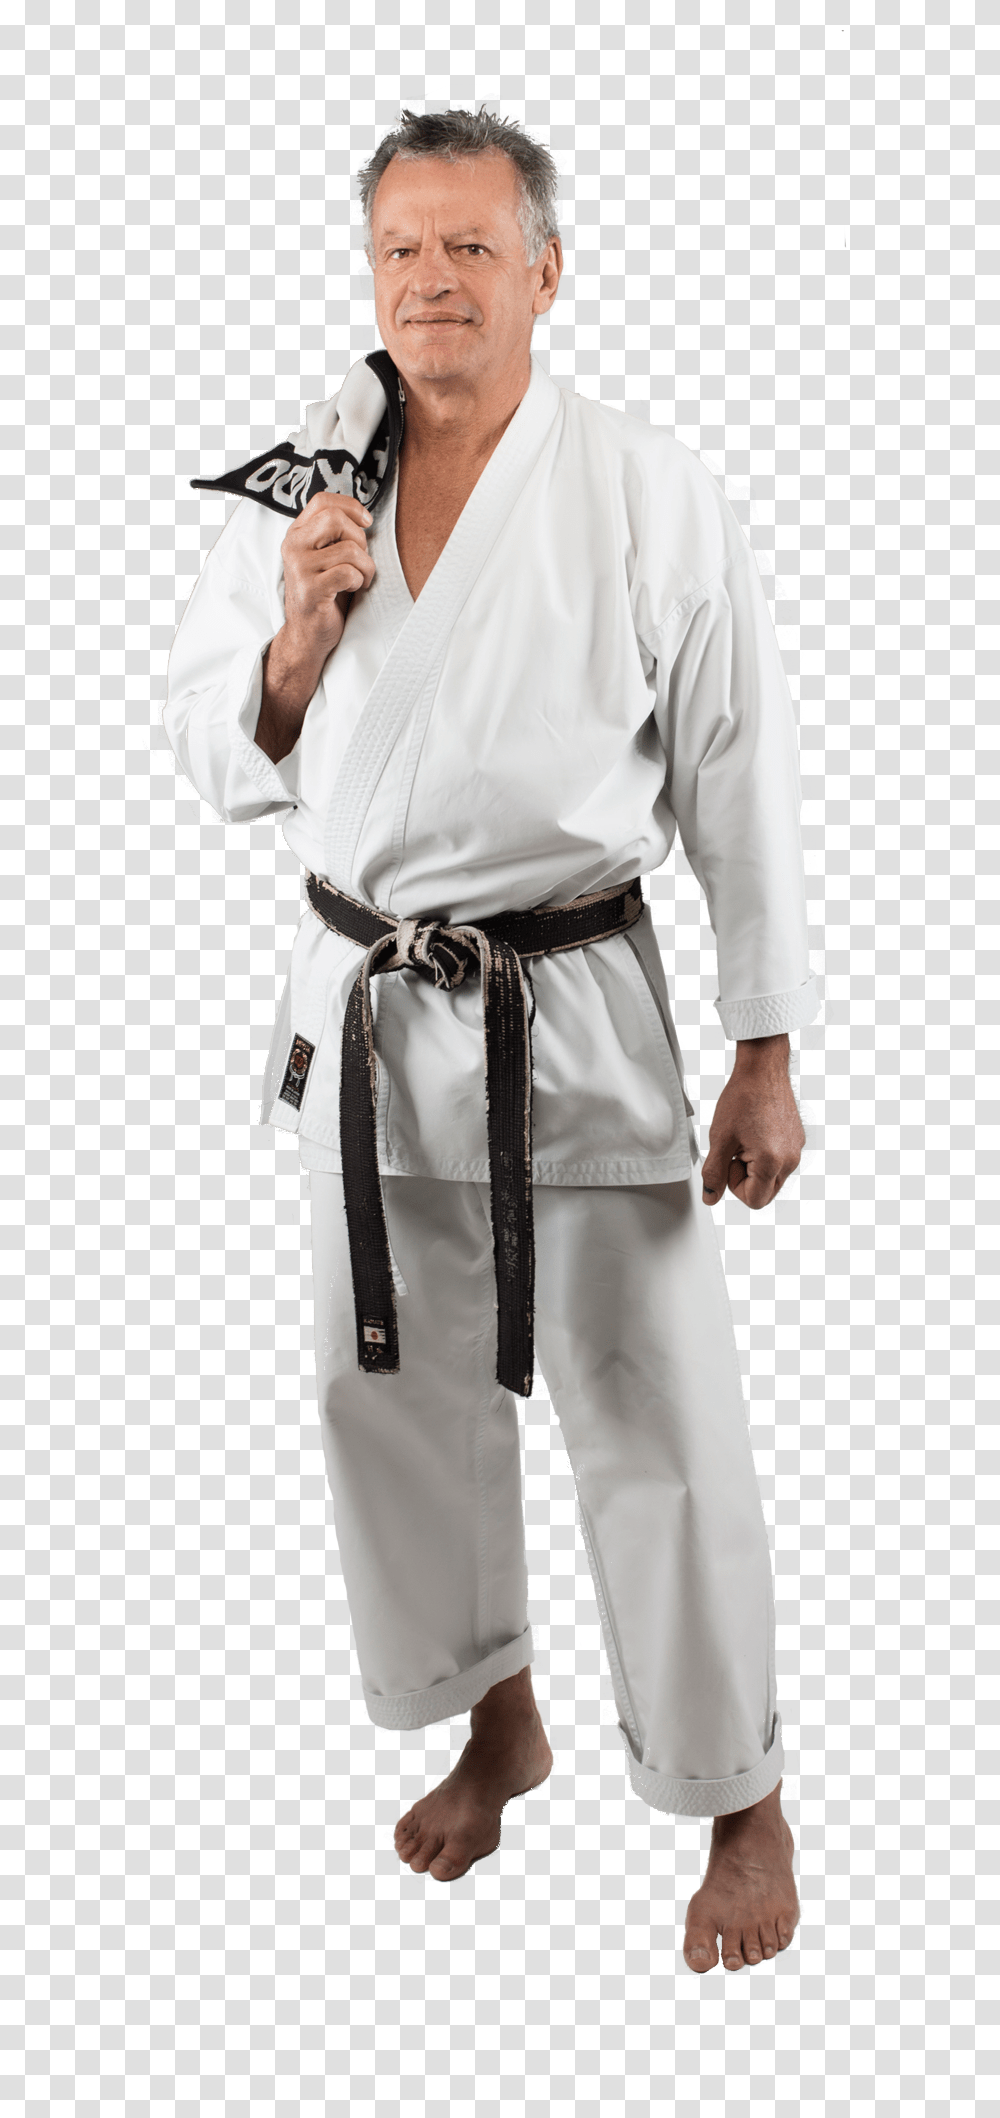 Karate, Sport, Person, Human, Martial Arts Transparent Png